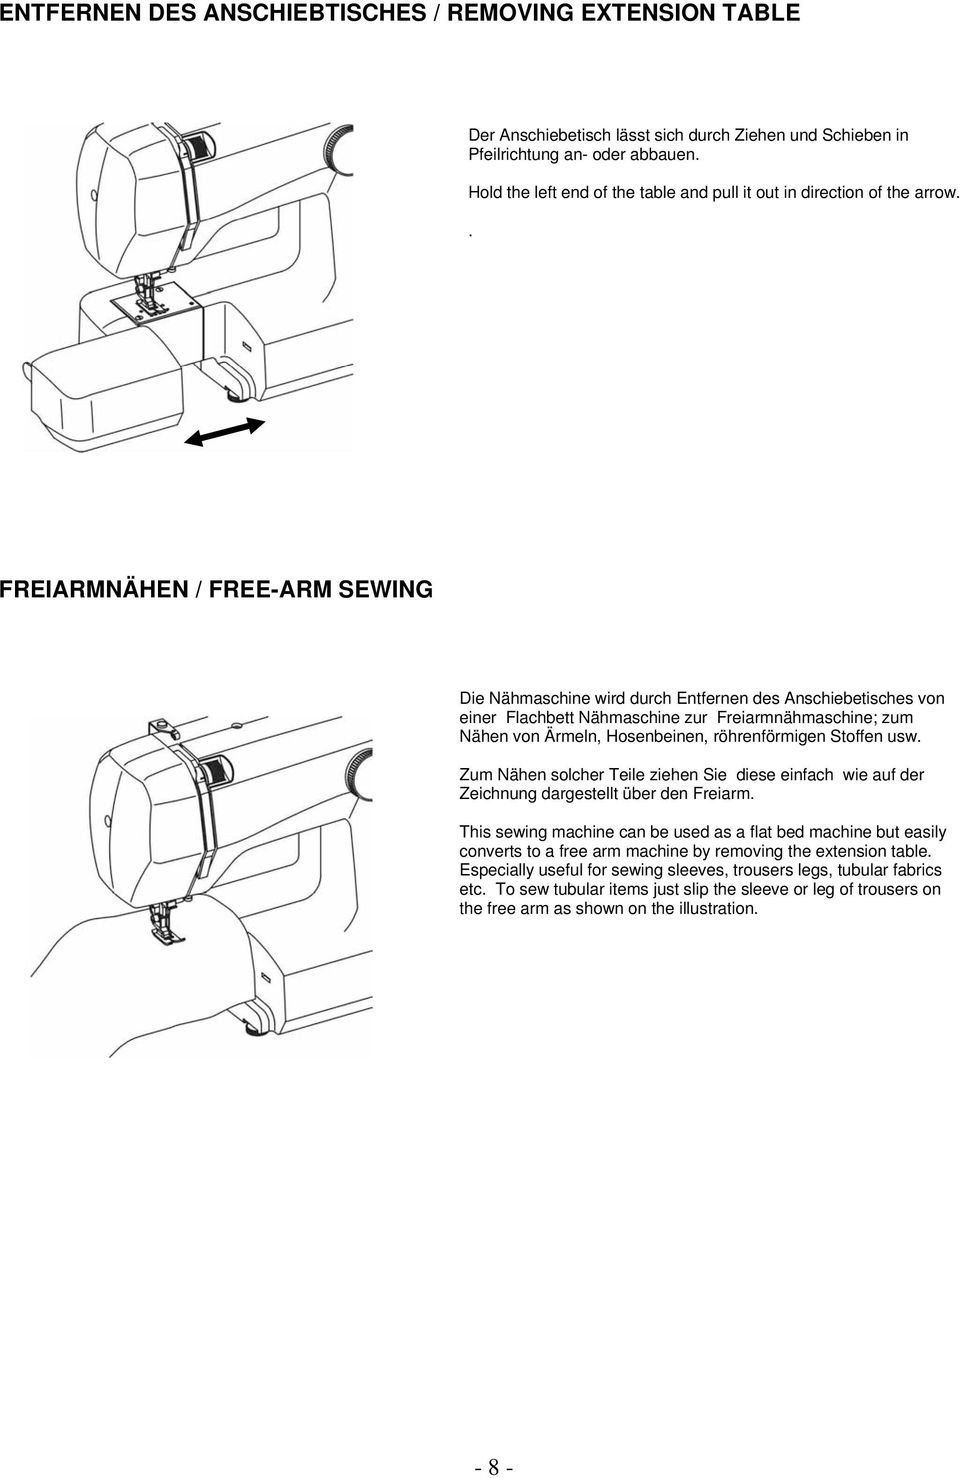 . FREIARMNÄHEN / FREE-ARM SEWING Die Nähmaschine wird durch Entfernen des Anschiebetisches von einer Flachbett Nähmaschine zur Freiarmnähmaschine; zum Nähen von Ärmeln, Hosenbeinen, röhrenförmigen